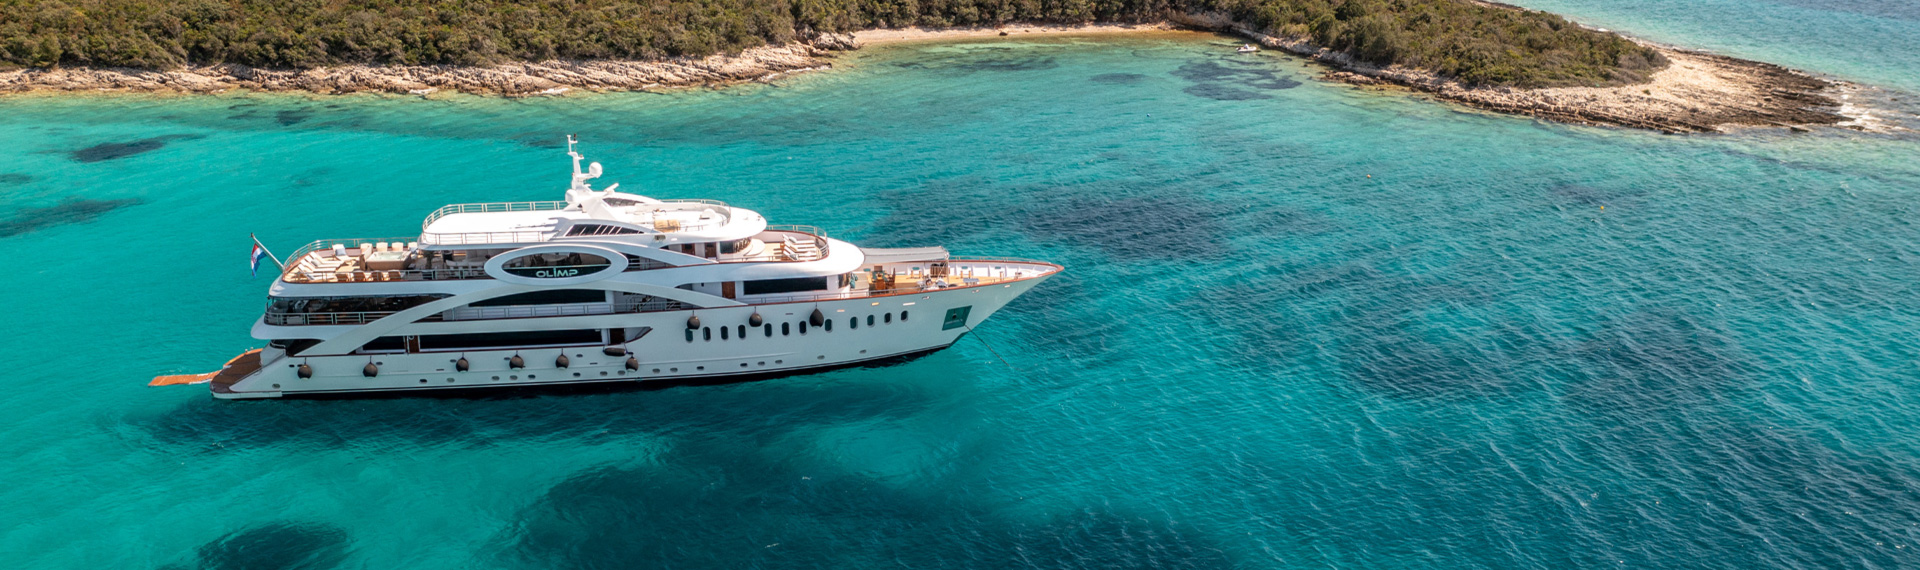 Luxury Yacht in Croatia